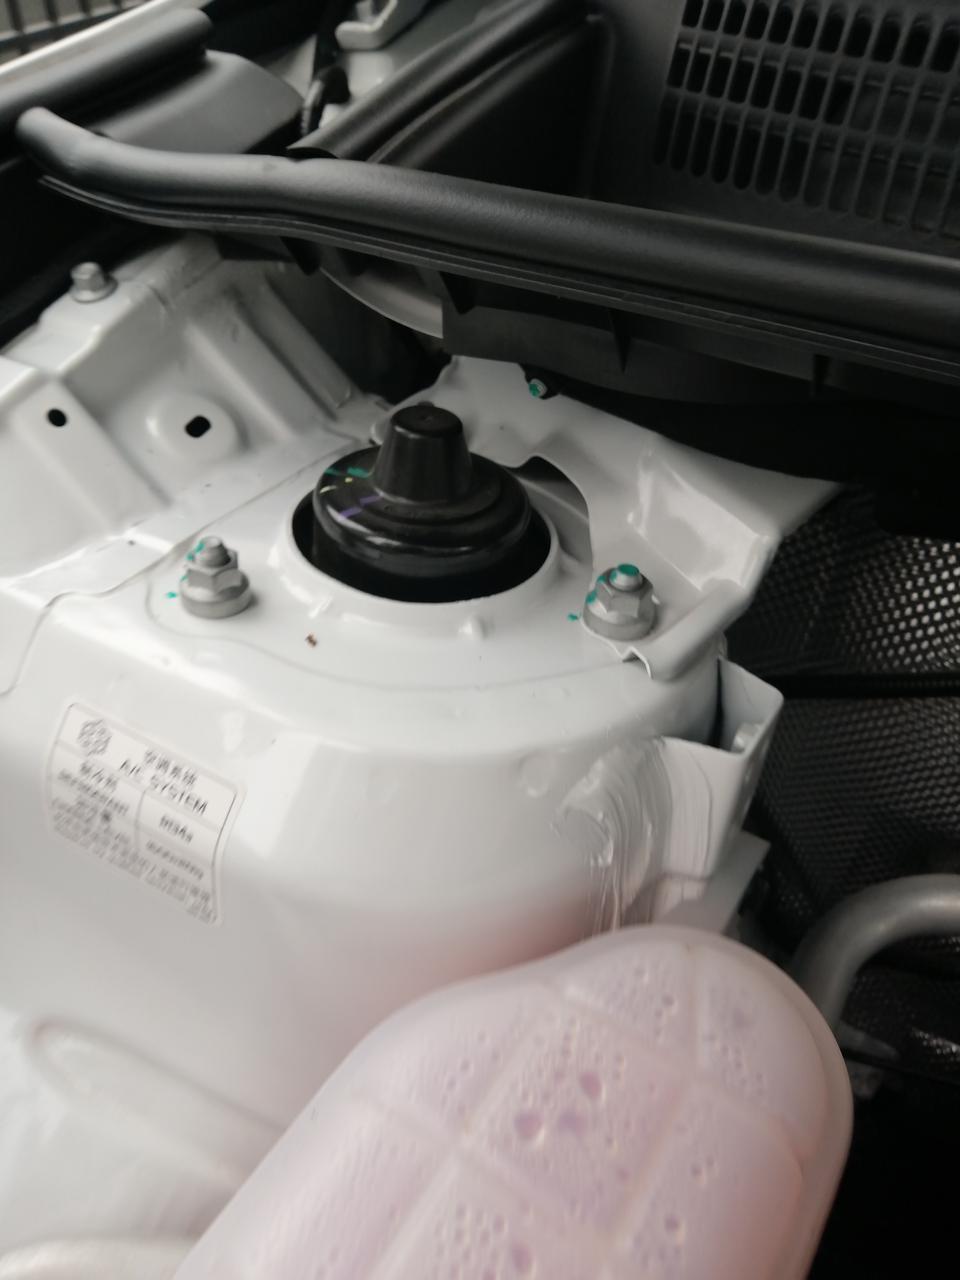 远景x6吉利远景×62020款发动机舱照片中白色的支架上封了白色的胶，是什么用？